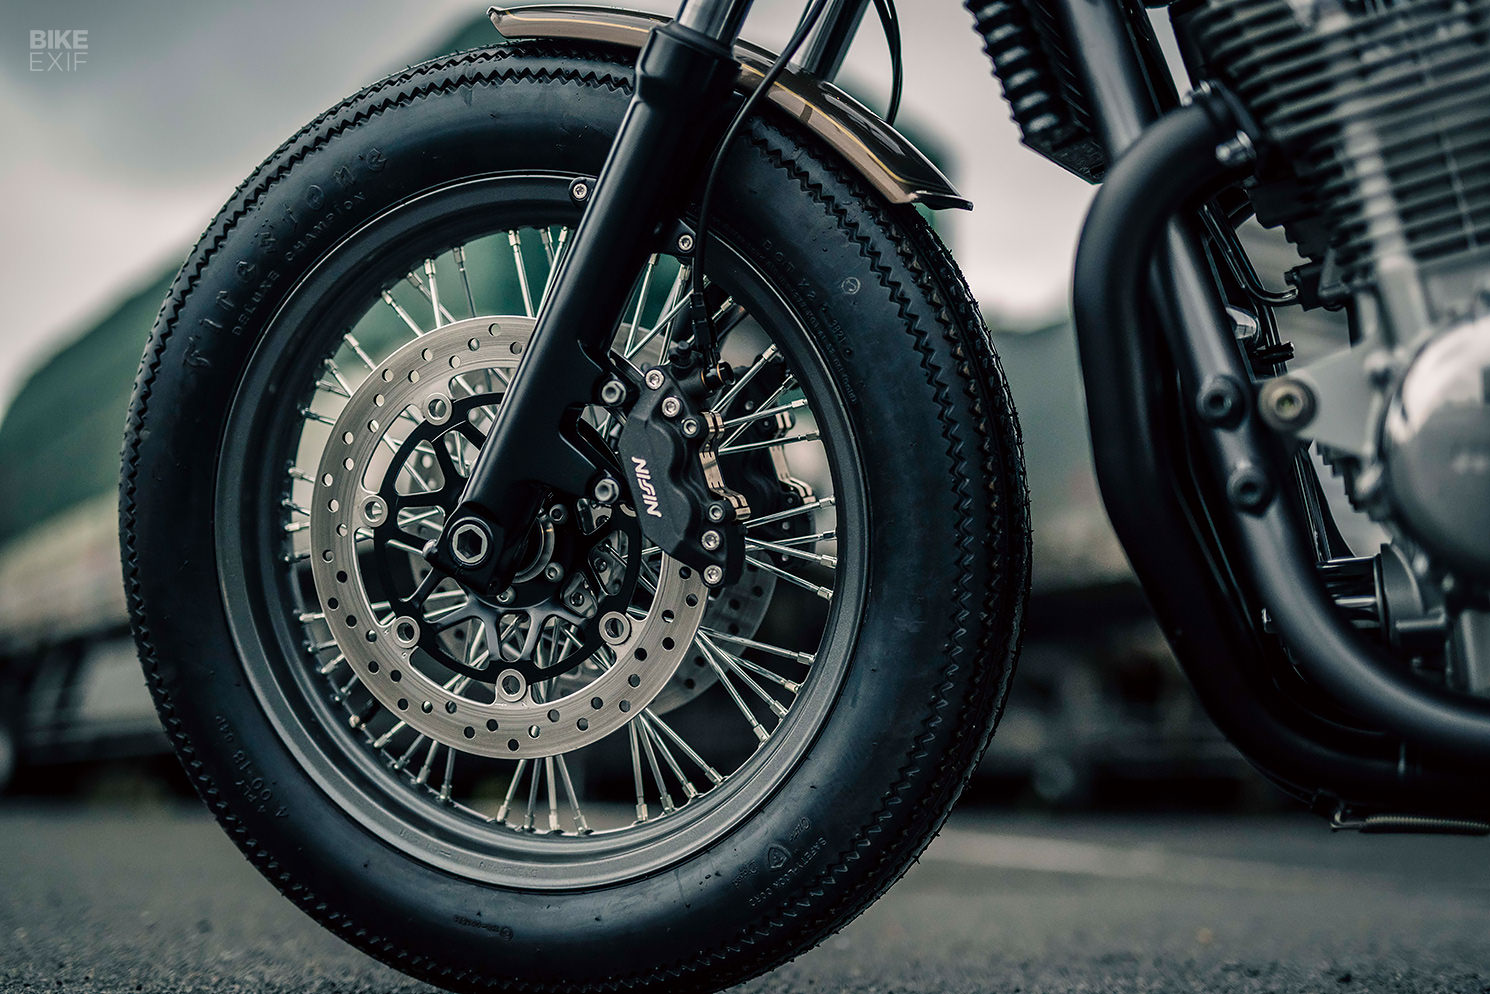 Custom Honda CB1100 by Wedge Motorcycle